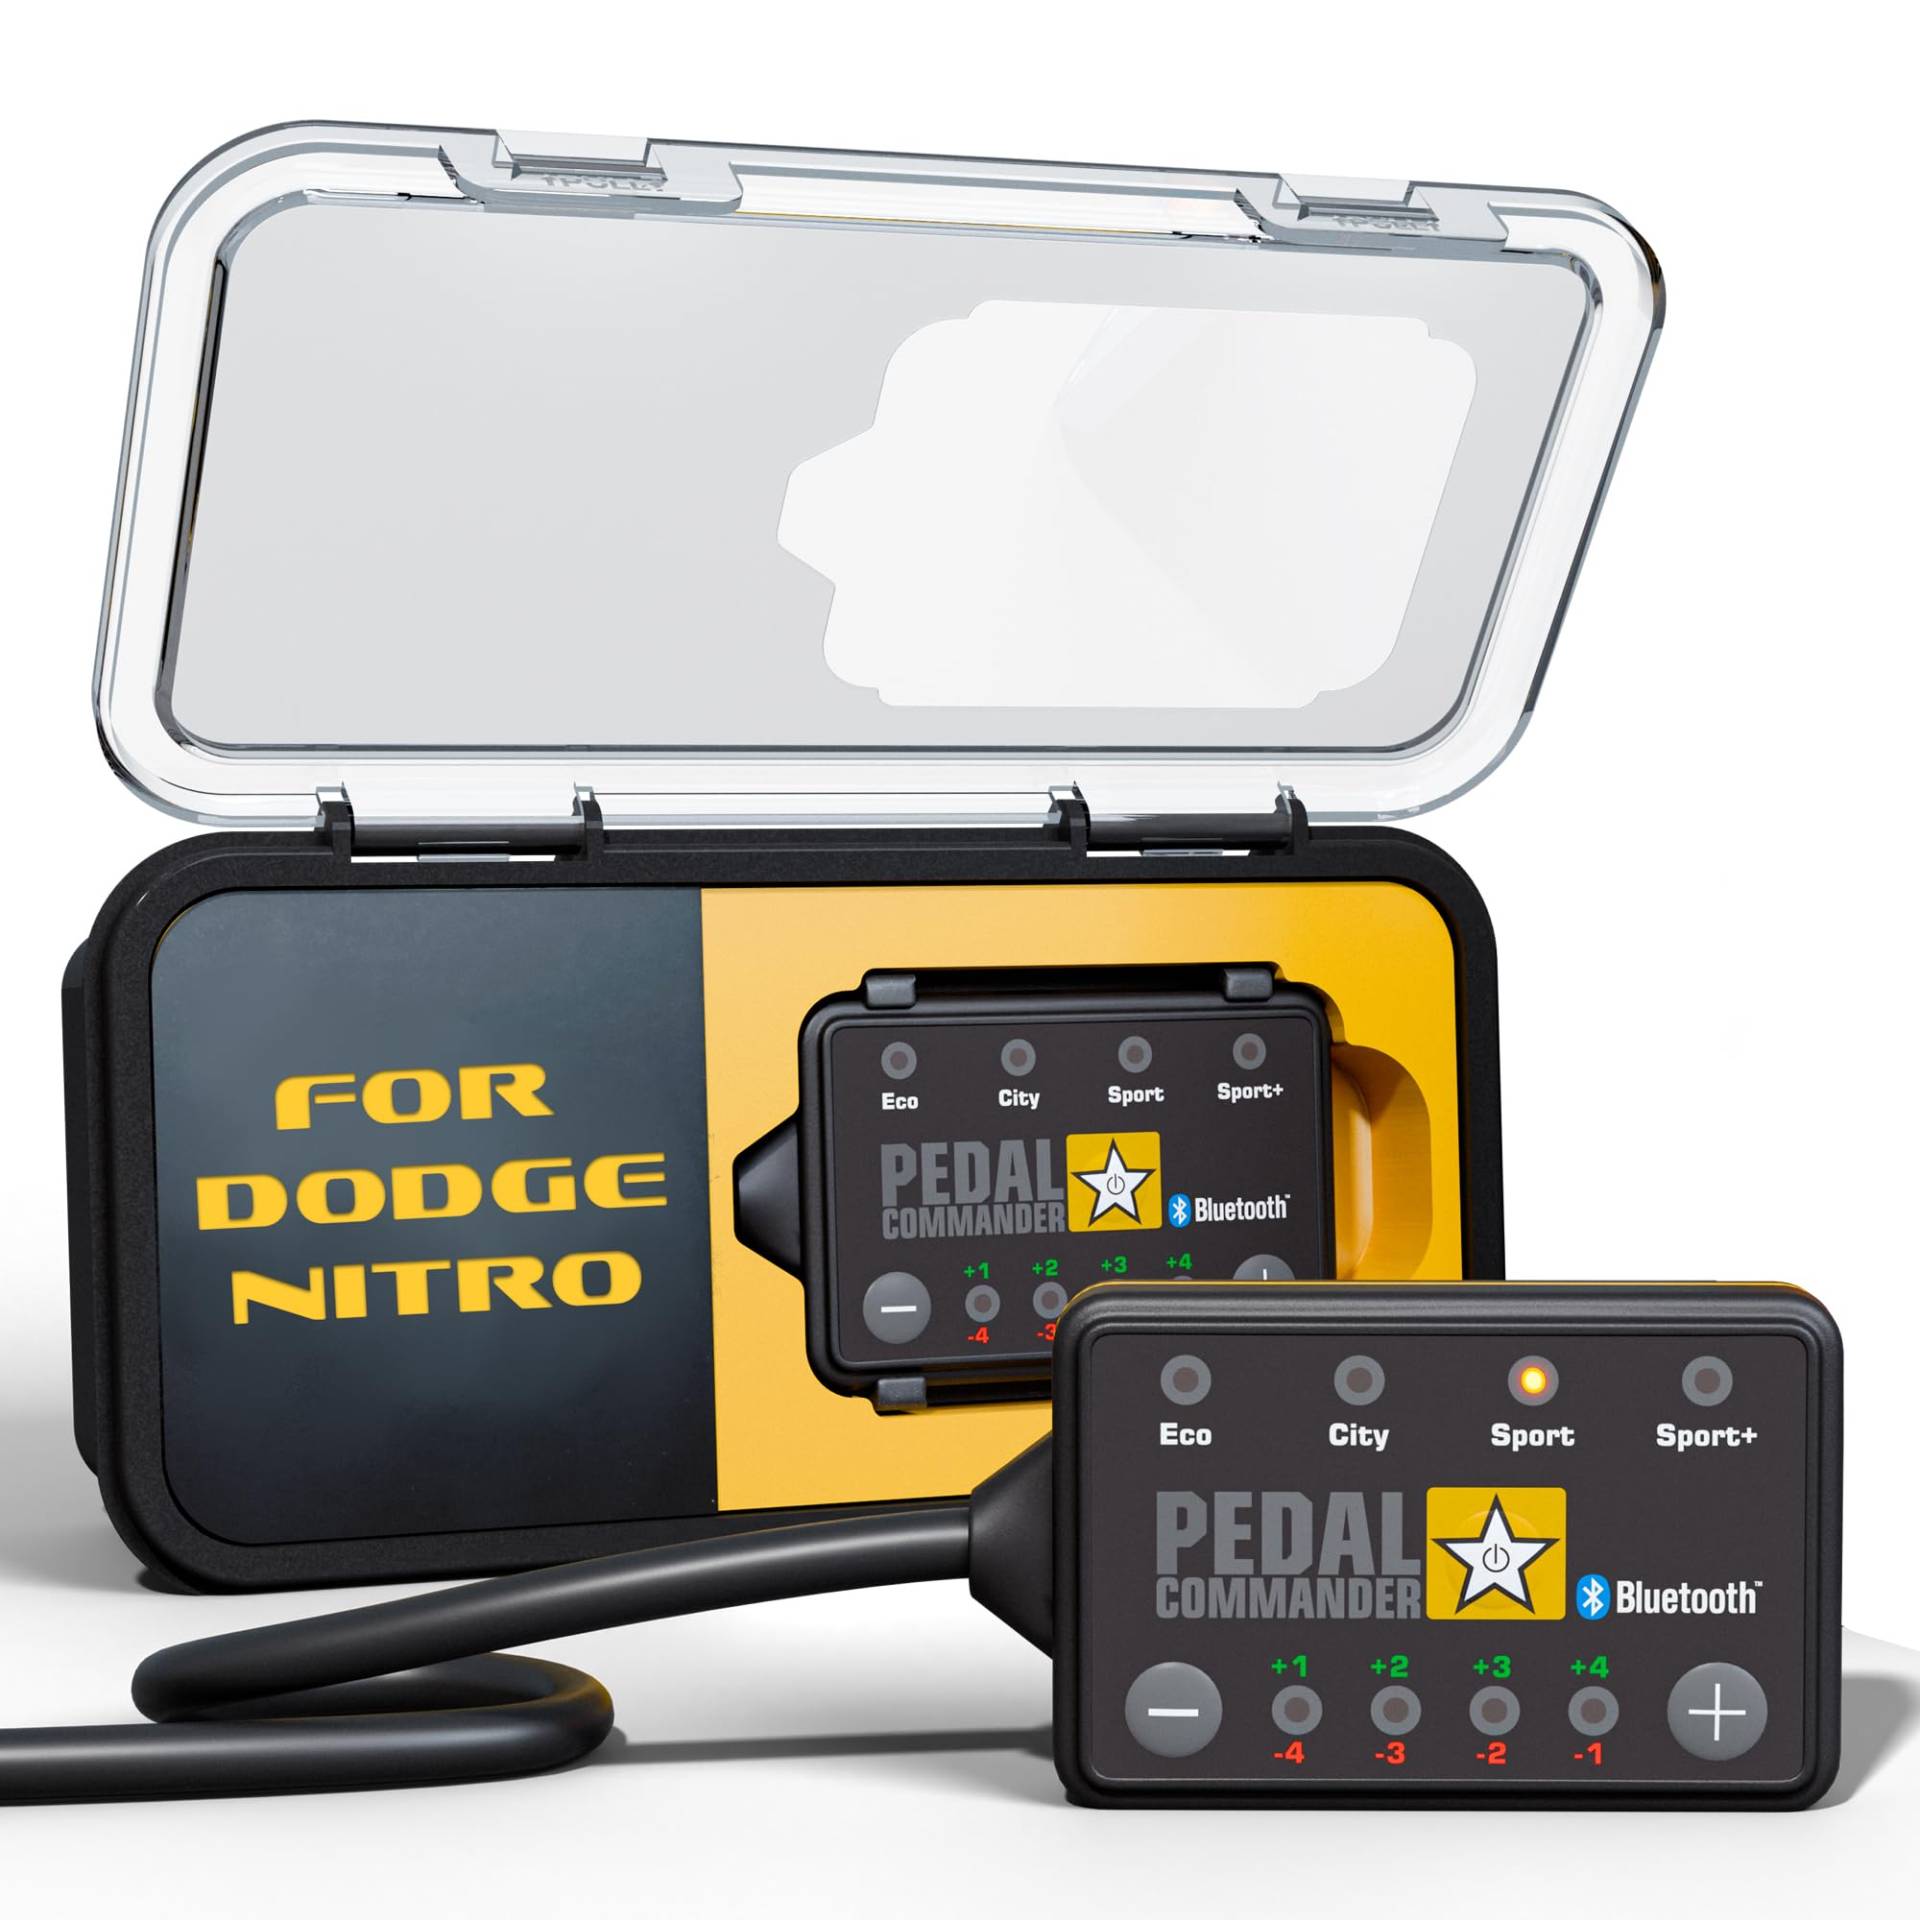 PEDAL COMMANDER ist für Dodge Nitro (2007-2011) Modelle Benzin und Diesel - GasPedal Tuning Zubehör von PEDAL COMMANDER